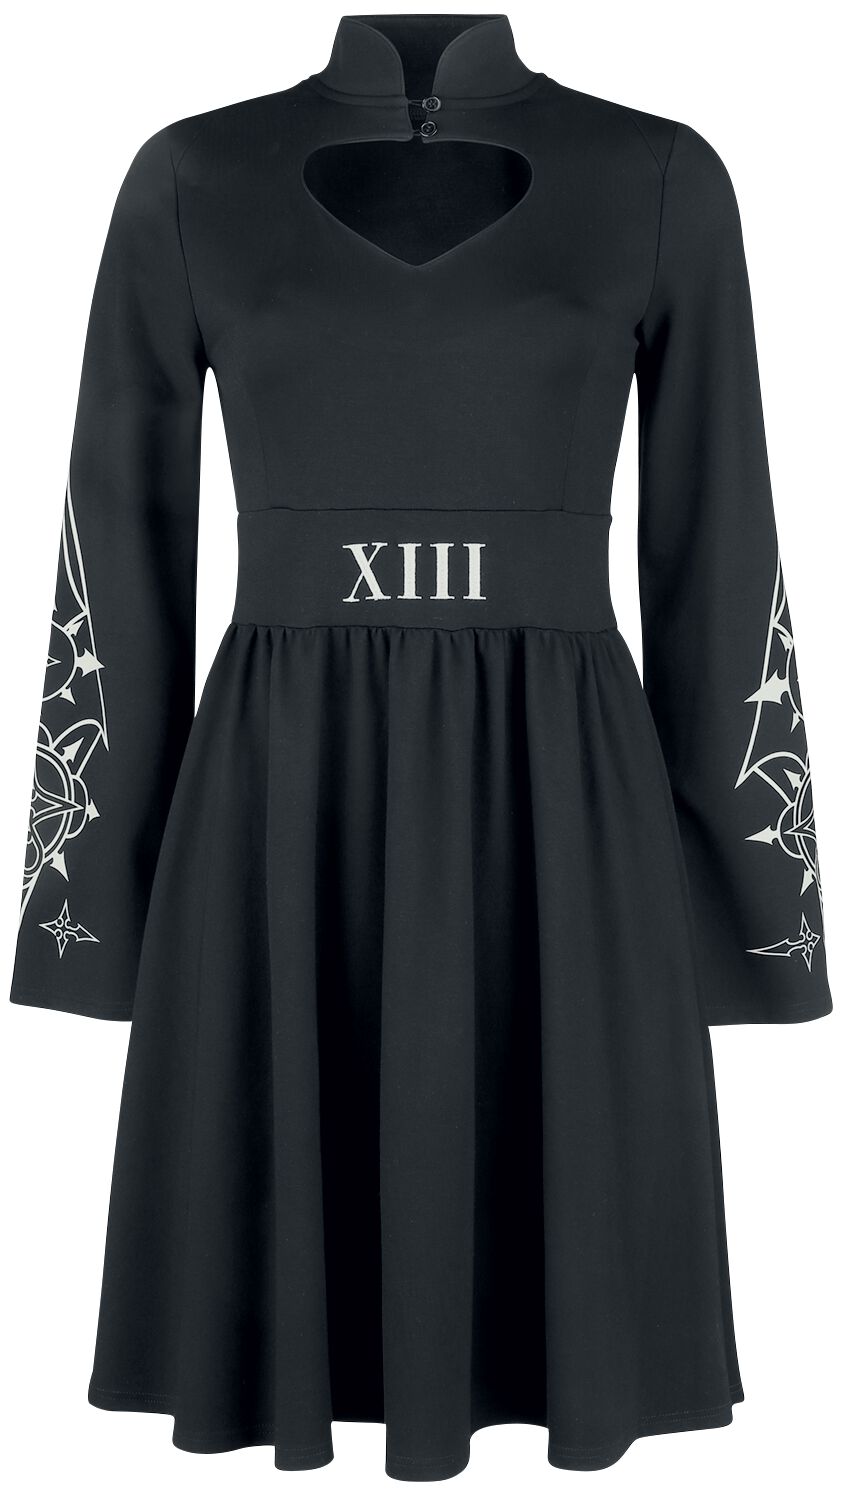 Kingdom Hearts Organisation 13 Medium-length dress black